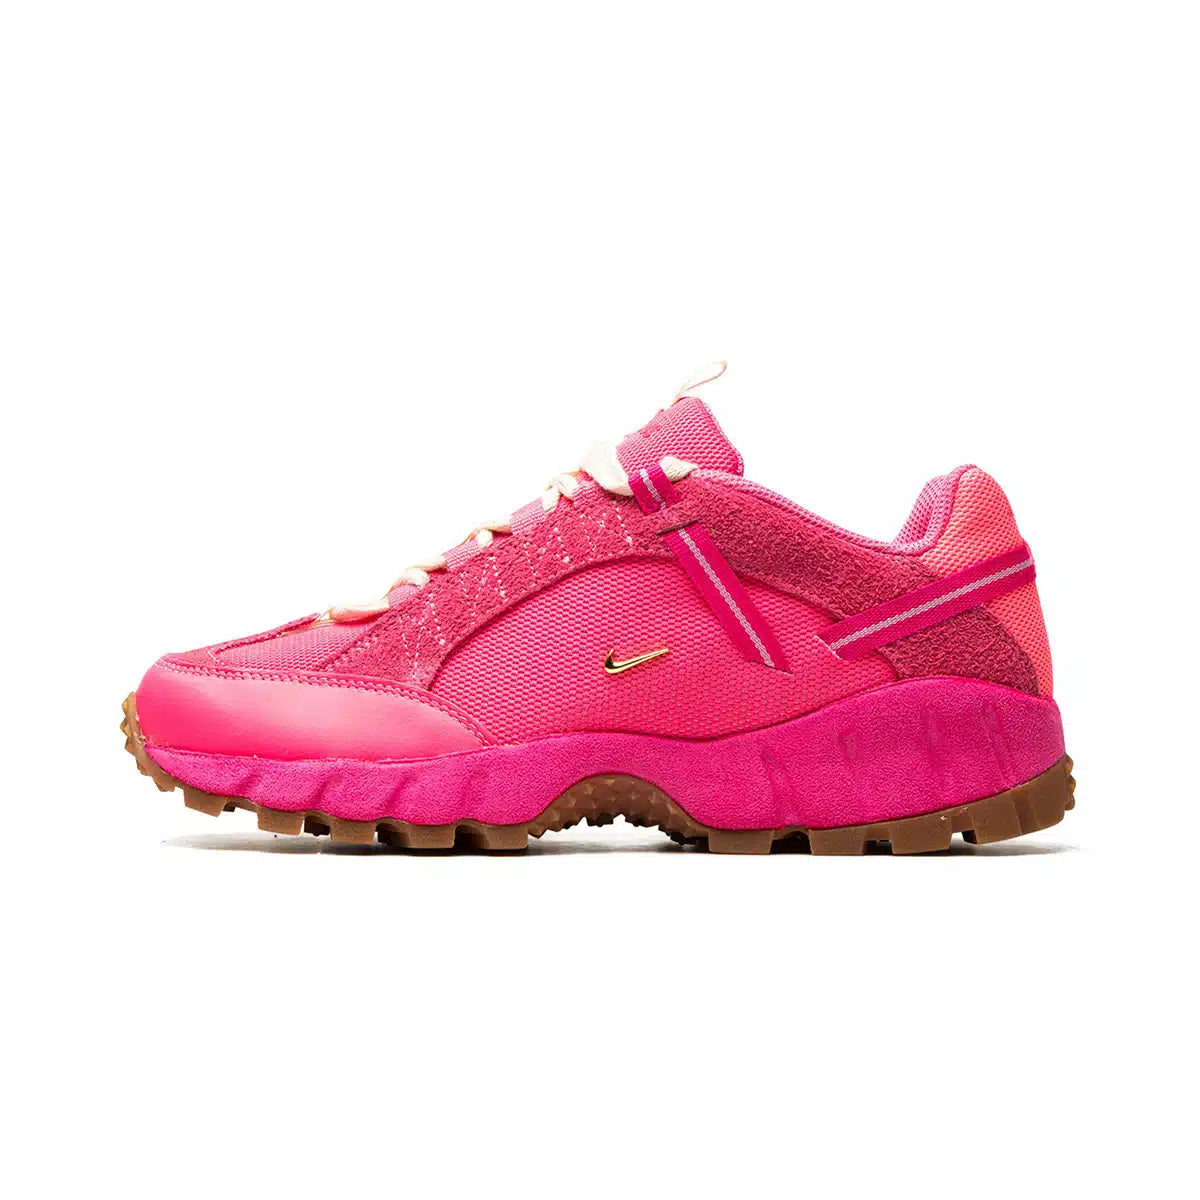 Lato esterno della sneakers Nike Air Humara Lx Jacquemus Pink